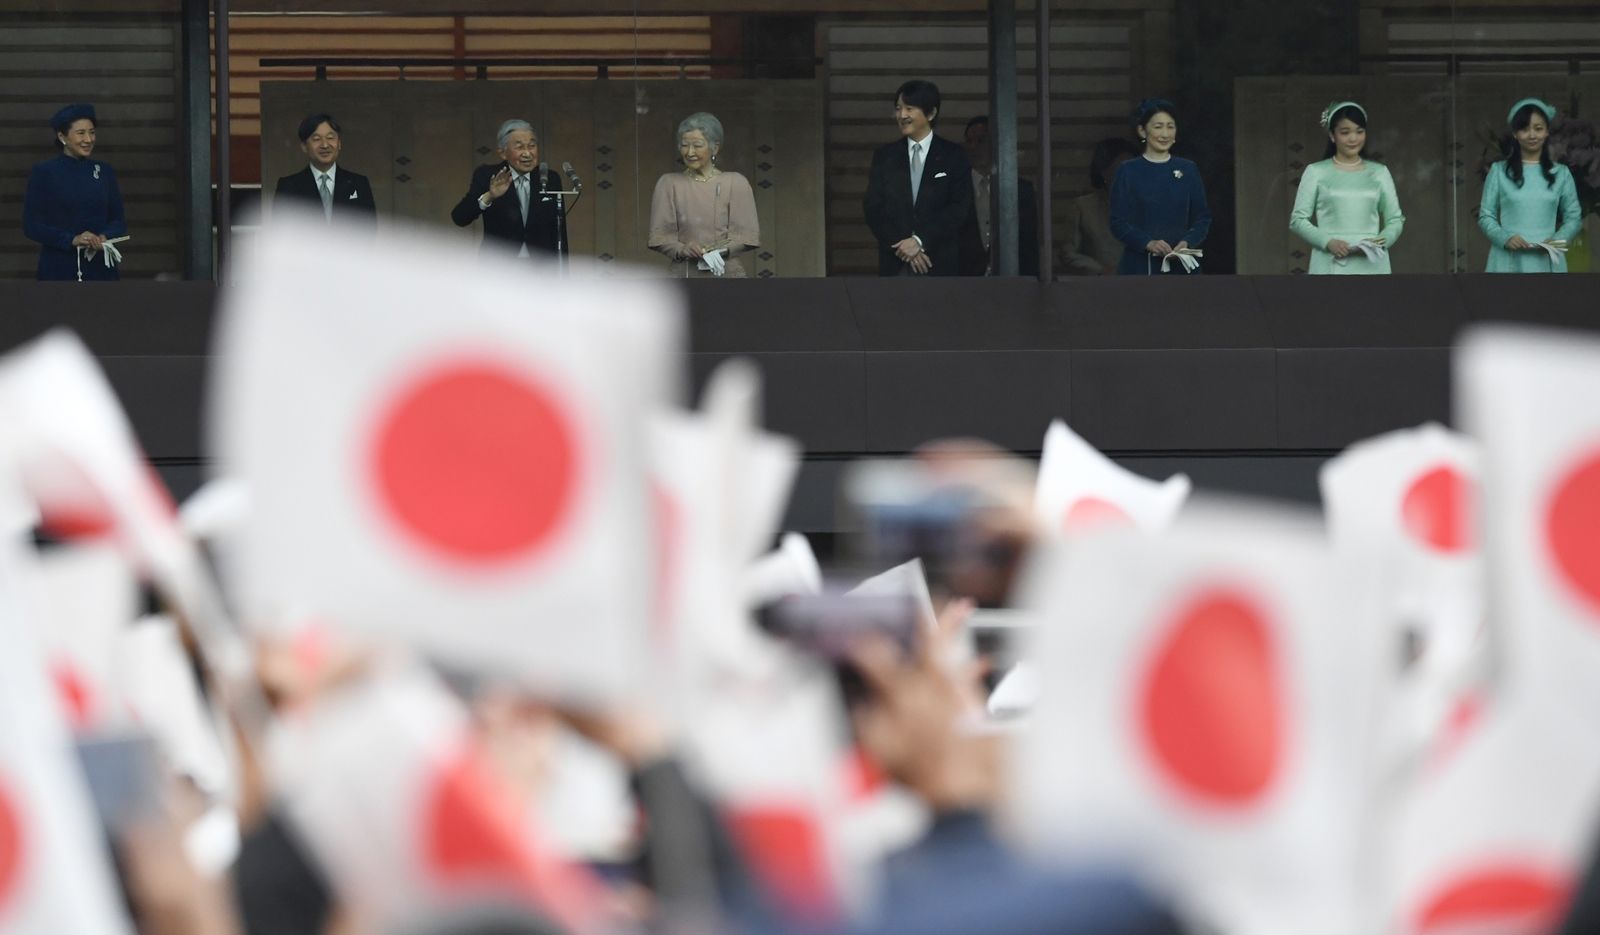 AFP-ราชวงศ์ญี่ปุ่น-จักรพรรดิอะกิฮิโตะ-จักรพรรดินีมิชิโกะ-เจ้าชายนะรุฮิโตะและอื่นๆ.jpg